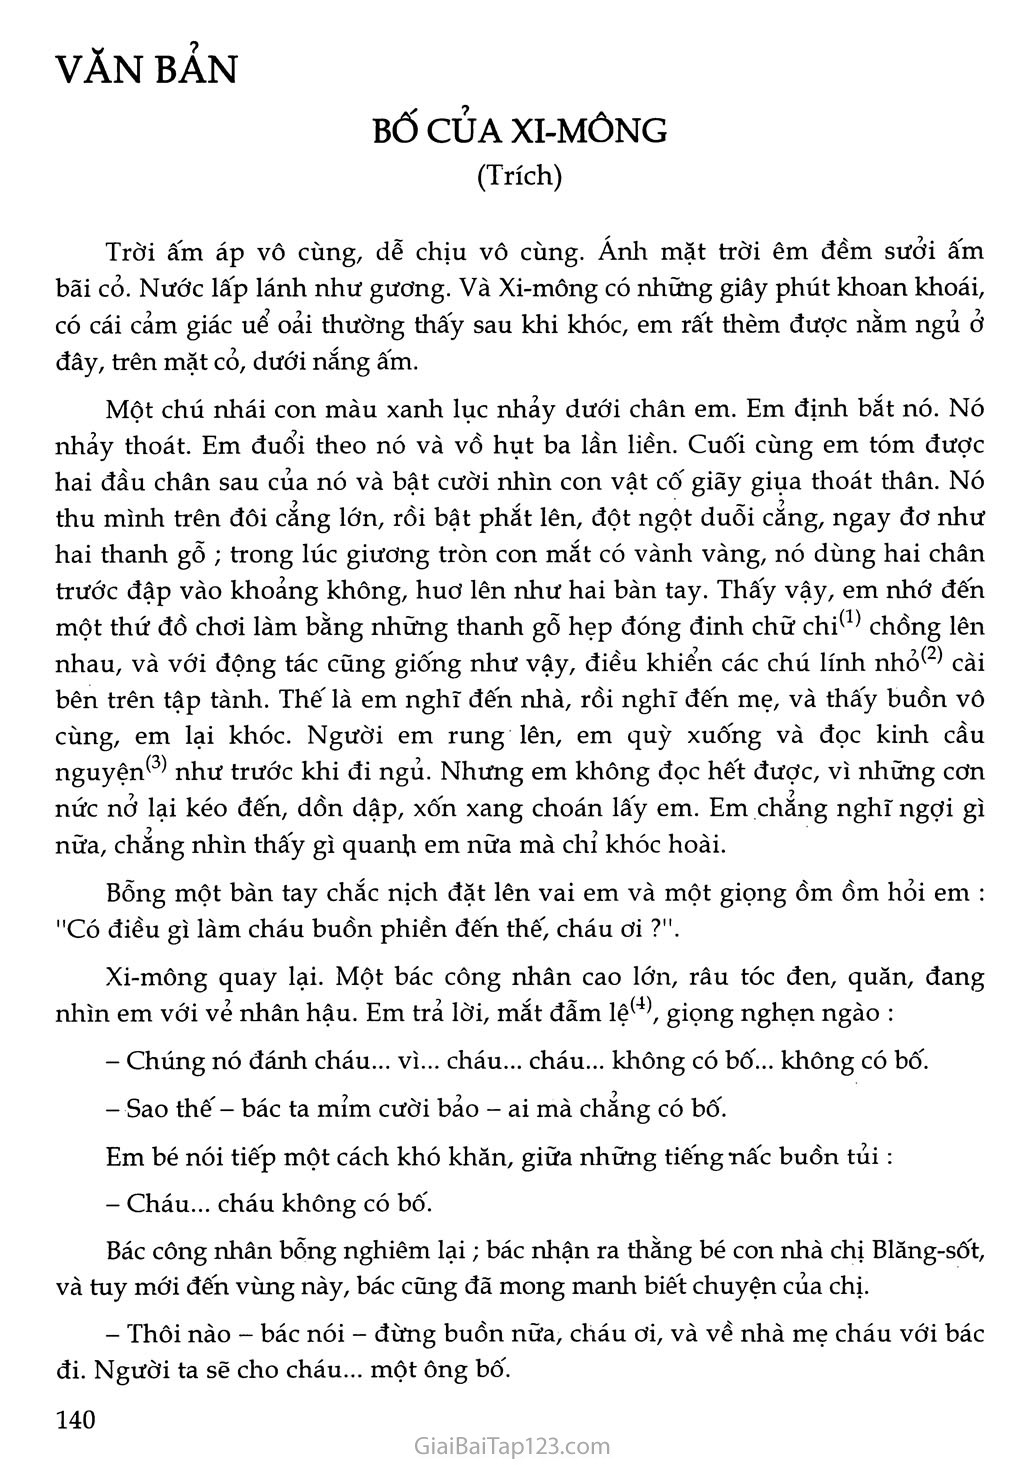 Bố của Xi-mông (trích) trang 2